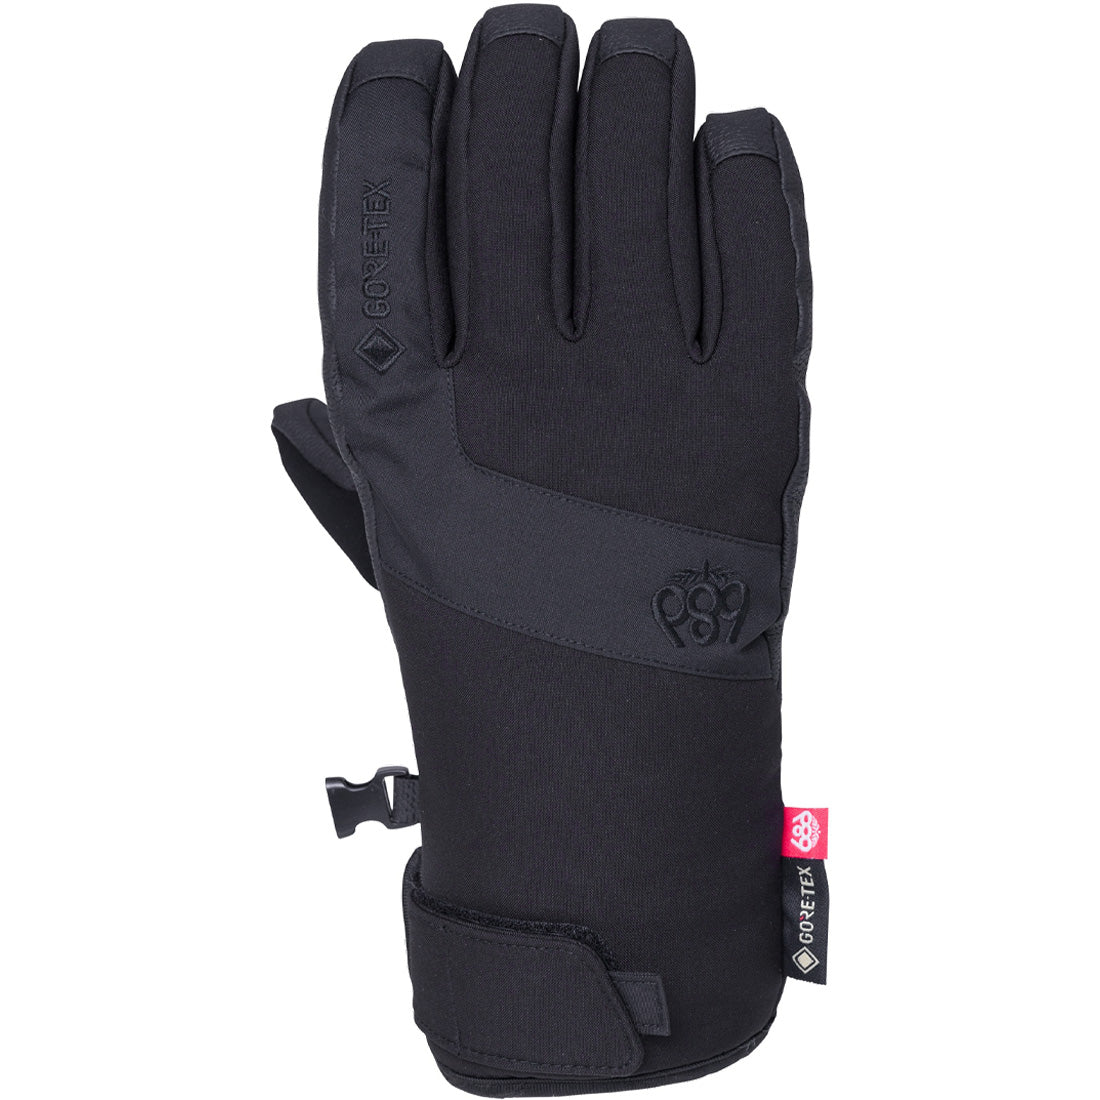 686 GTX Linear Under Cuff Glove - Women's